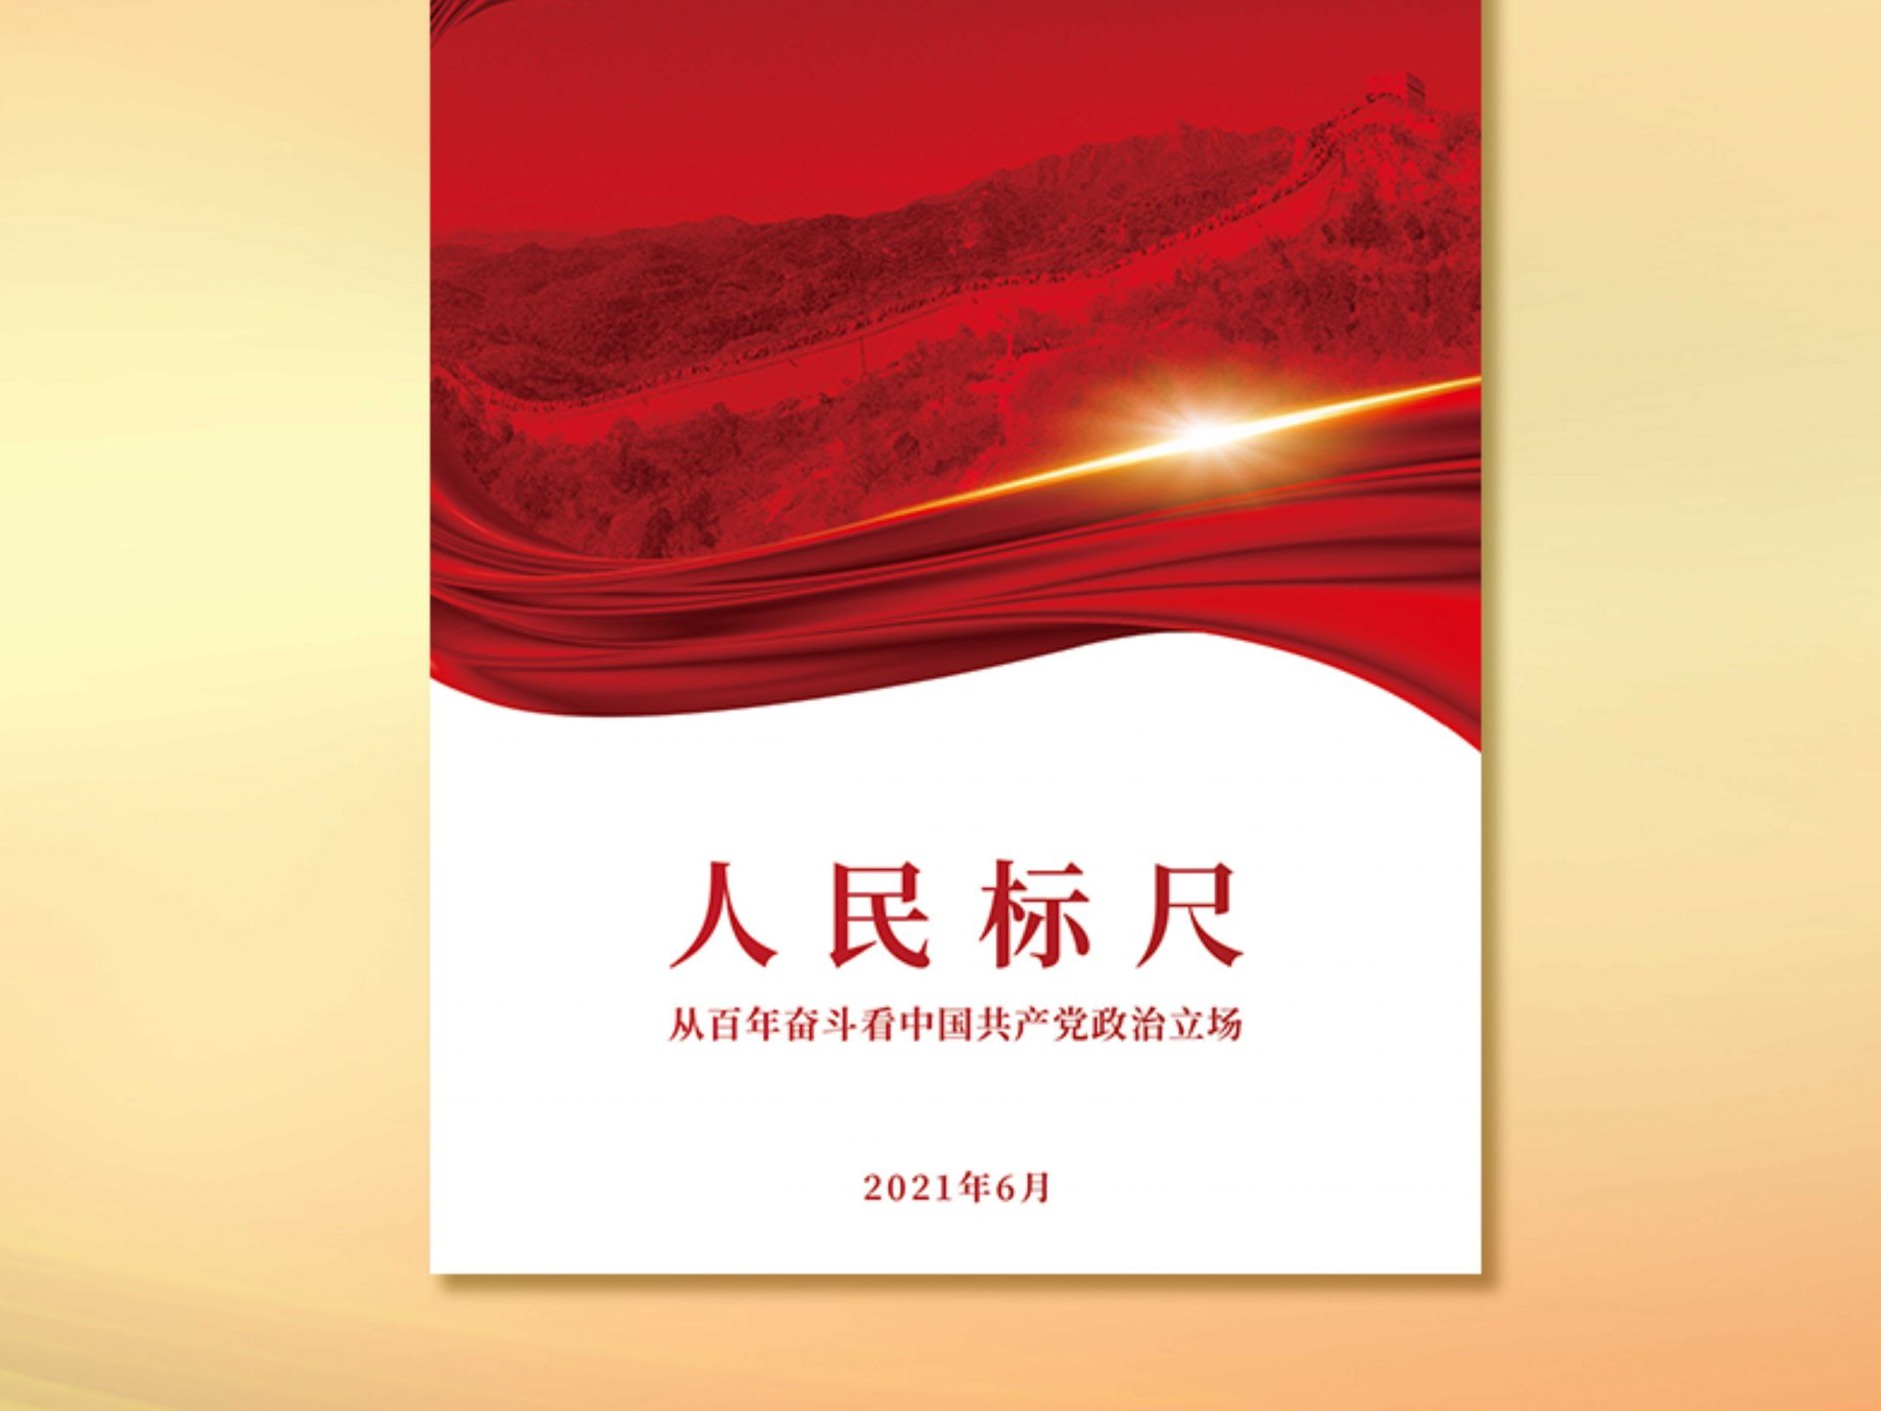 《人民标尺——从百年奋斗看中国共产党政治立场》智库报告发布